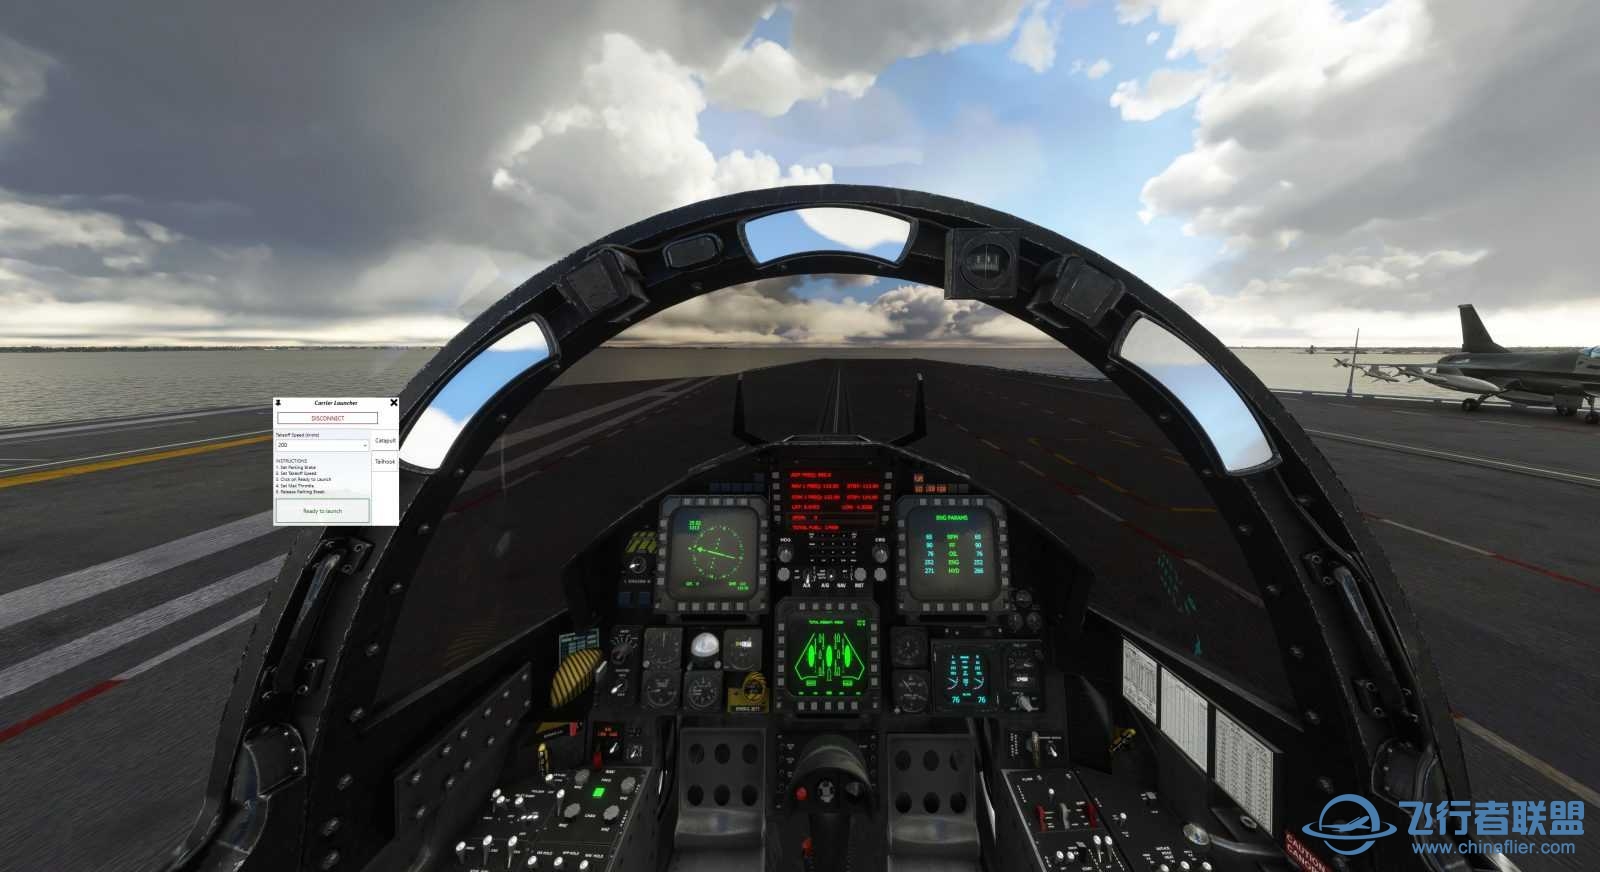 Miltech Simulations 发布美国乔治·H·W·布什航空母舰-2937 